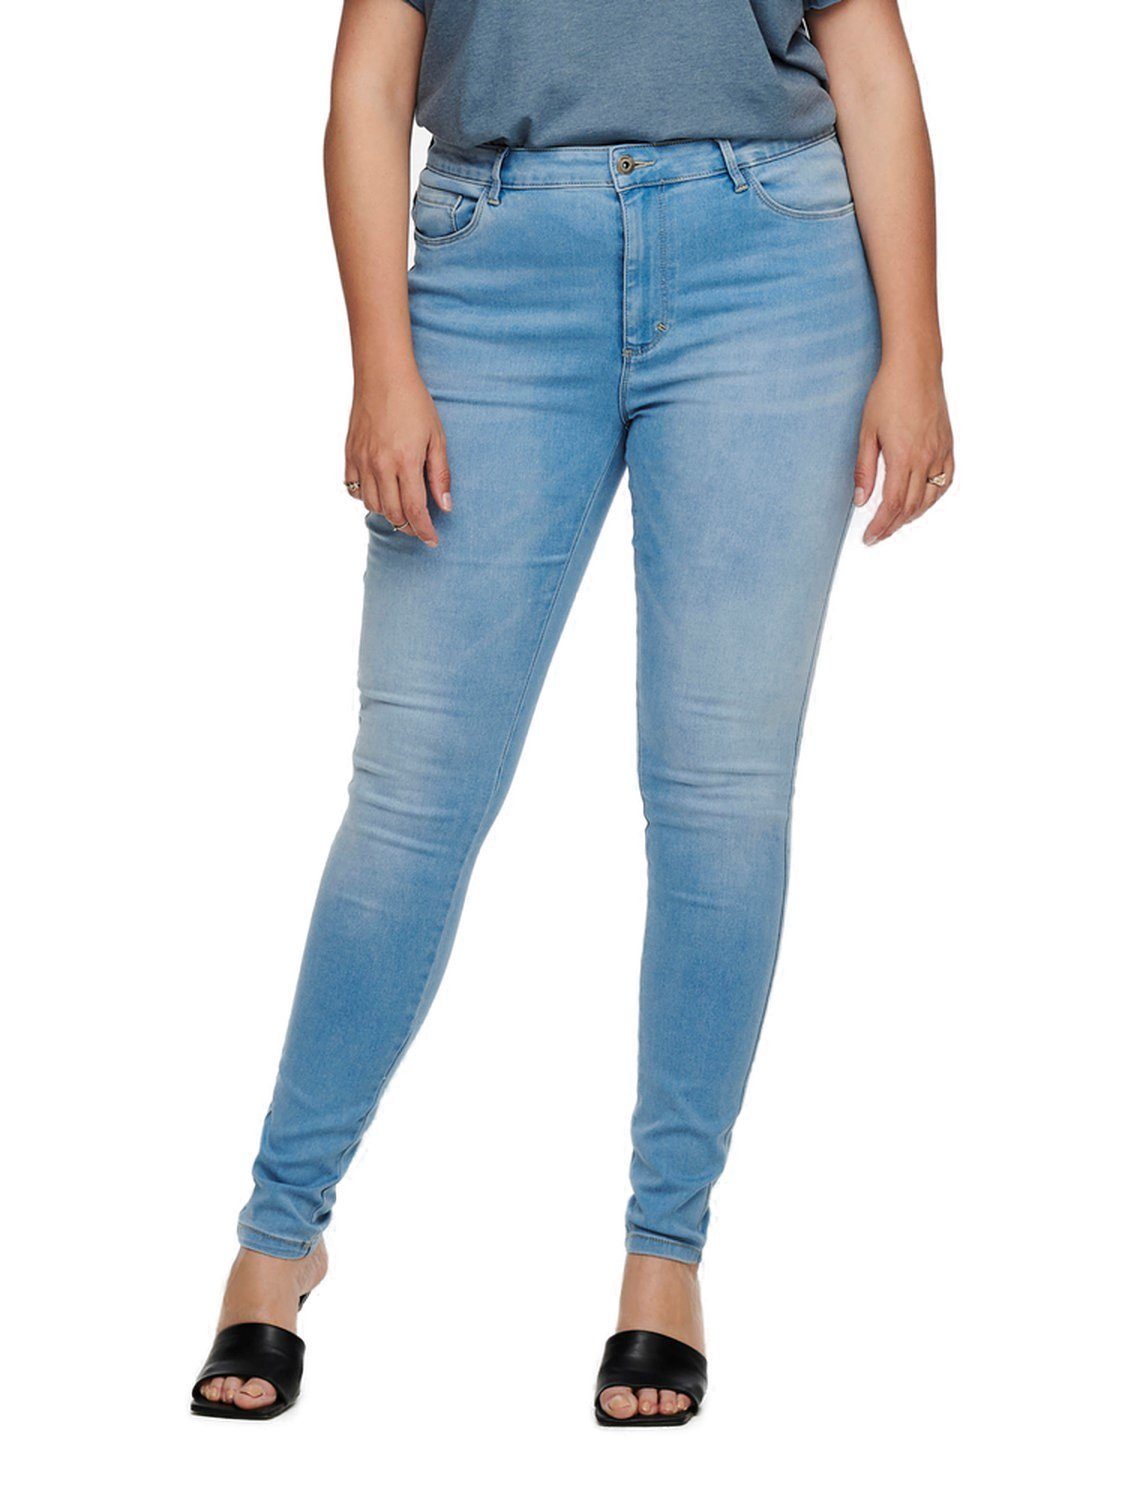 ONLY BJ13333 CARAUGUSTA Größen in mit Skinny-fit-Jeans Stretch großen